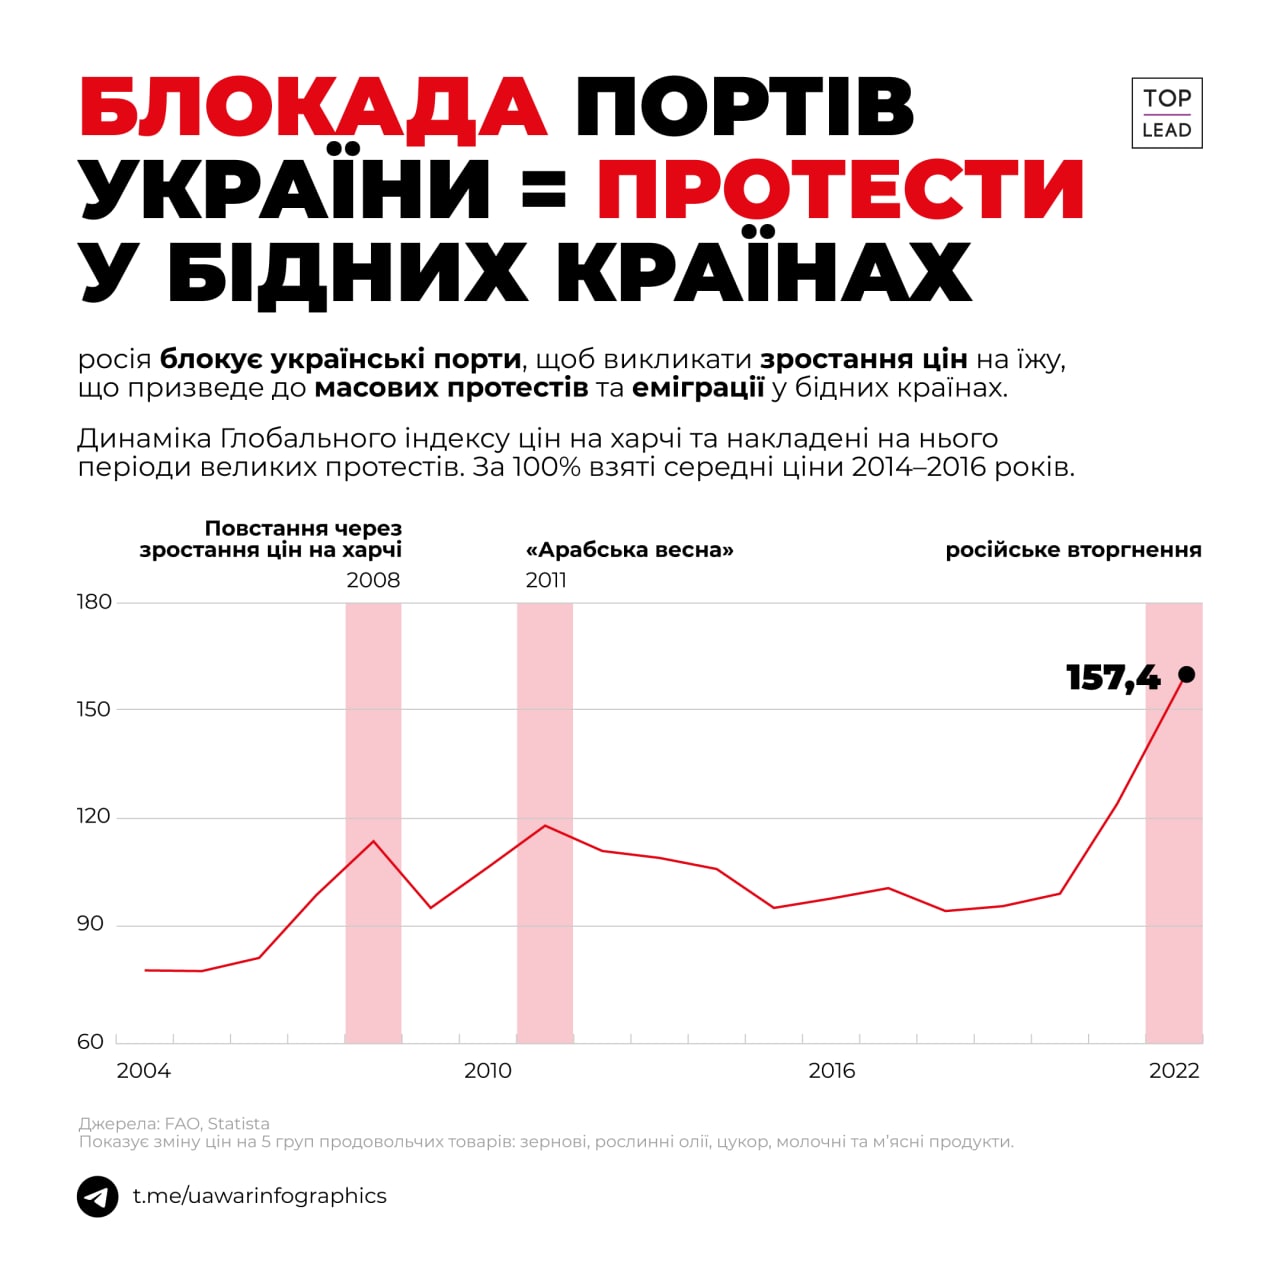 Блокада українських портів = зростання цін на харчі = протести в бідних країнах (ІНФОГРАФІКА)